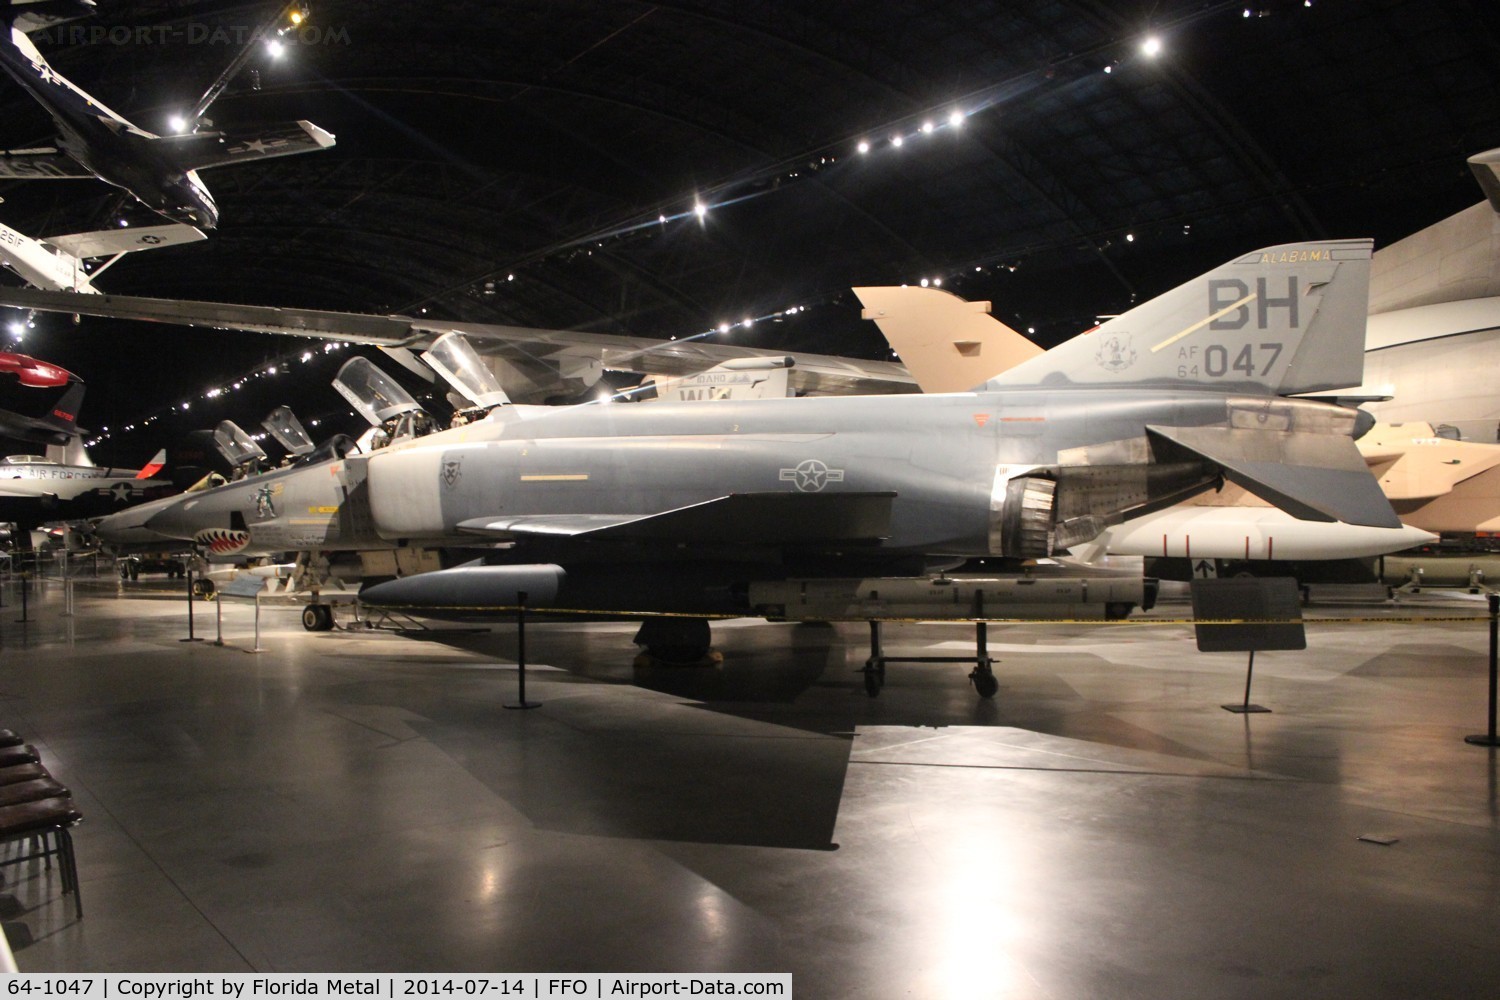 64-1047, 1964 McDonnell RF-4C-22-MC Phantom II C/N 947, RF-4C Phantom